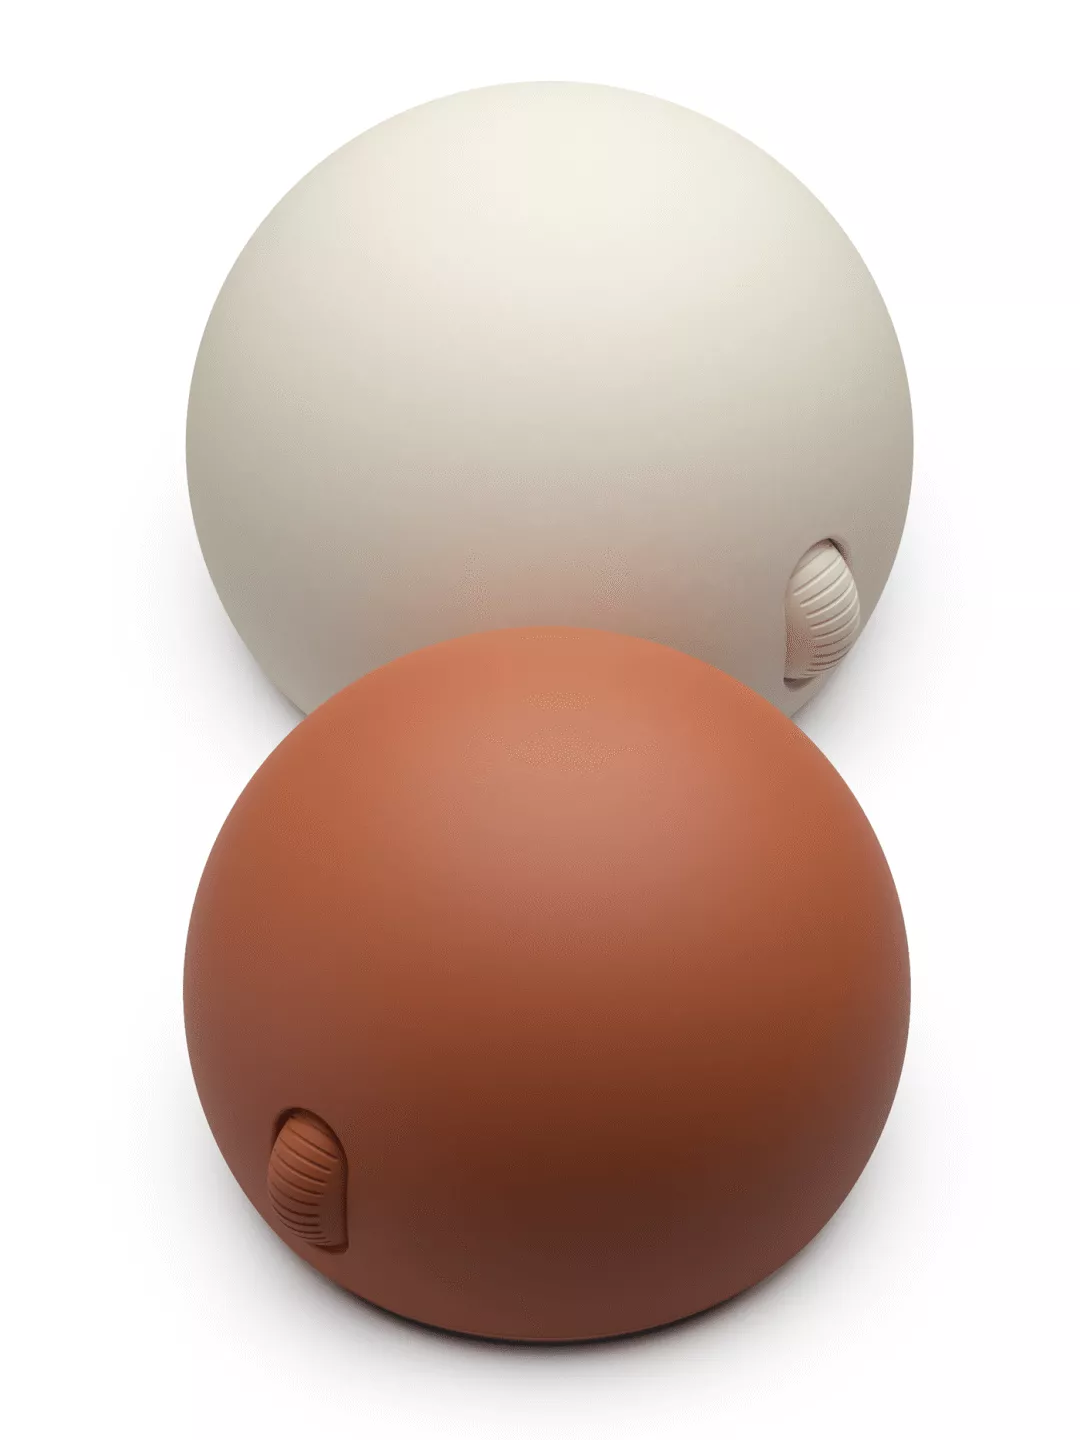 新时代，看产品设计的新追“球”